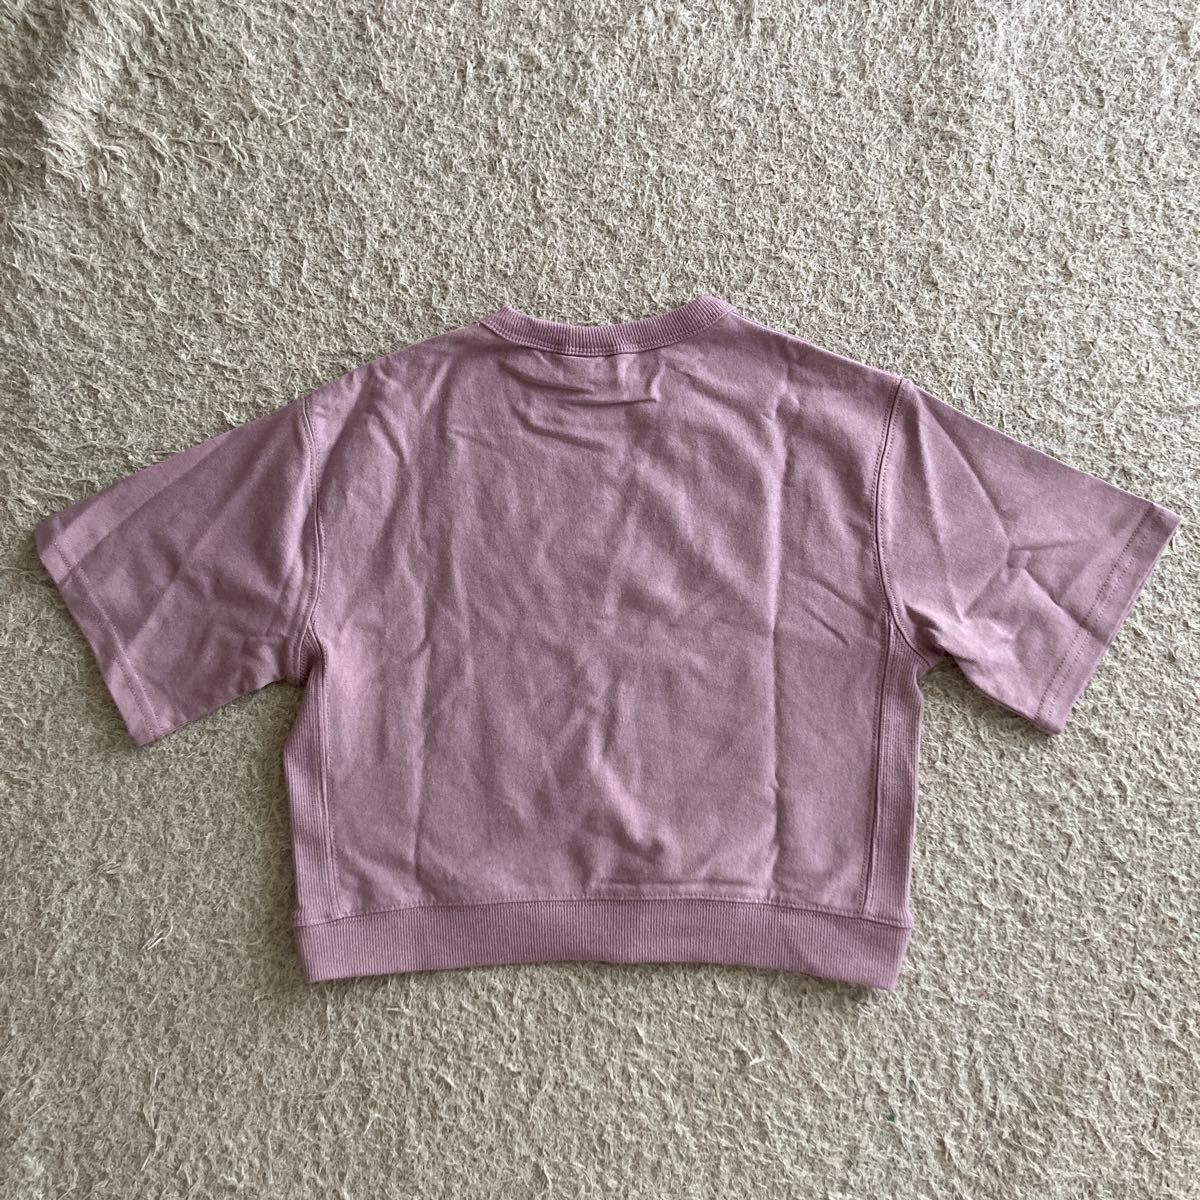 ★ 新品 サイズ100 半袖 Tシャツ ピンク chocolate かわいい おしゃれ